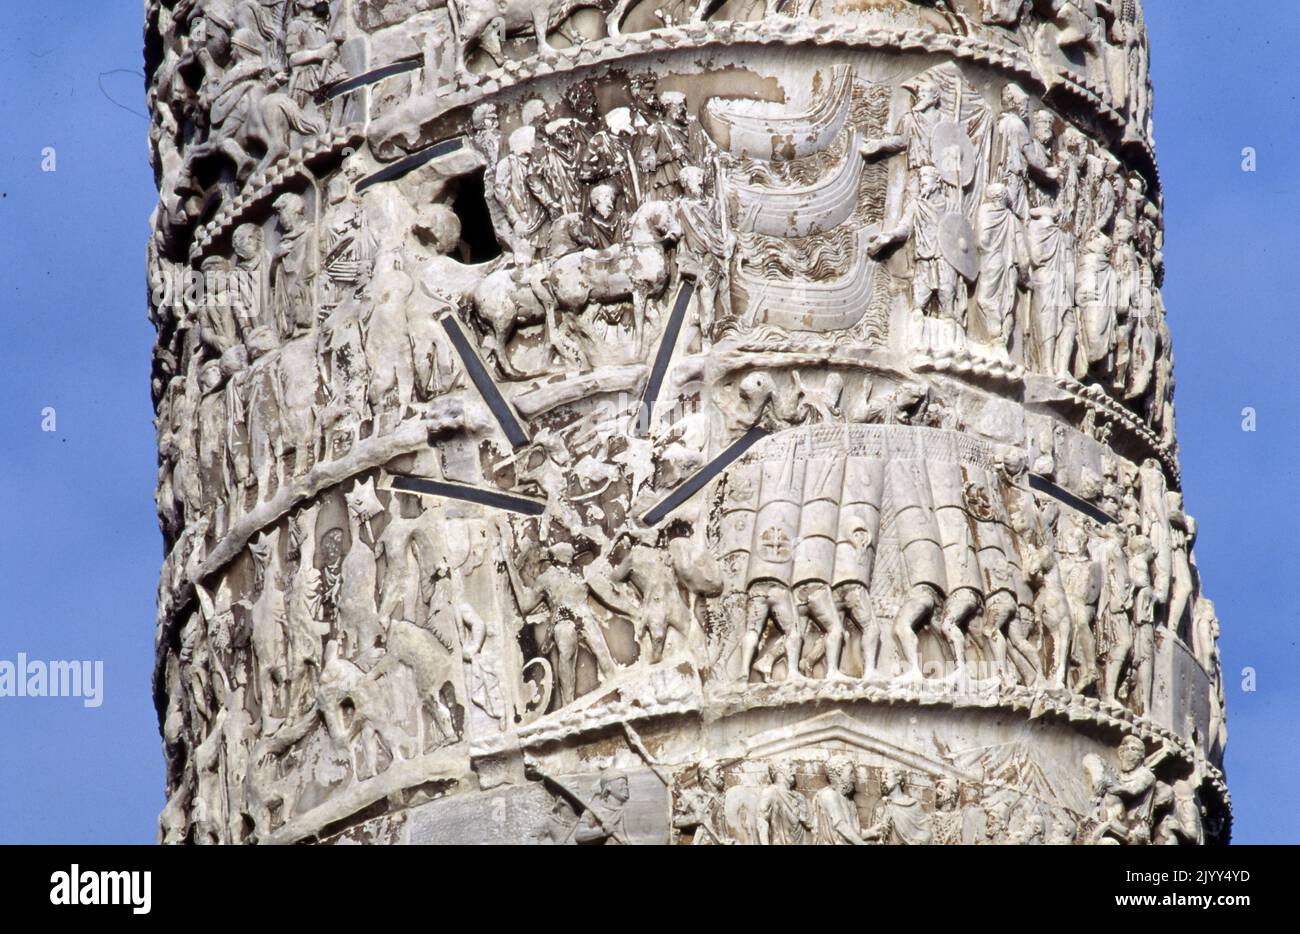 La colonna di Marco Aurelio; una colonna di vittoria romana in Piazza colonna, Roma, Italia. Si tratta di una colonna dorica con un rilievo a spirale: Costruita in onore dell'imperatore romano Marco Aurelio e modellata sulla colonna di Traiano, un'iscrizione rinvenuta nelle vicinanze attesta che la colonna è stata completata nel 193. Foto Stock